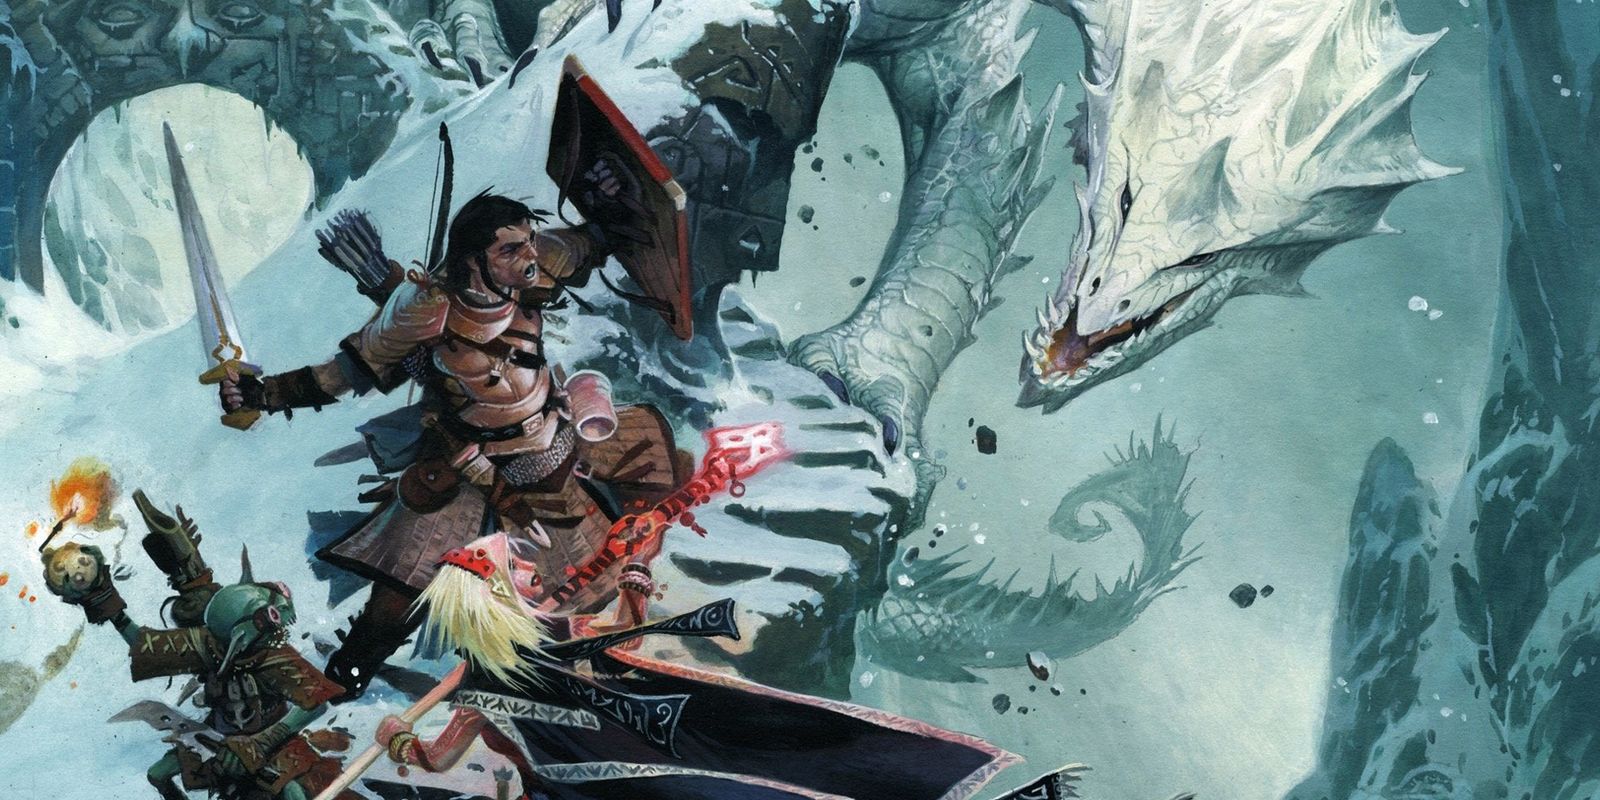 Três personagens do jogador Pathfinder caminham por um caminho estreito e nevado em direção a um dragão branco gigante